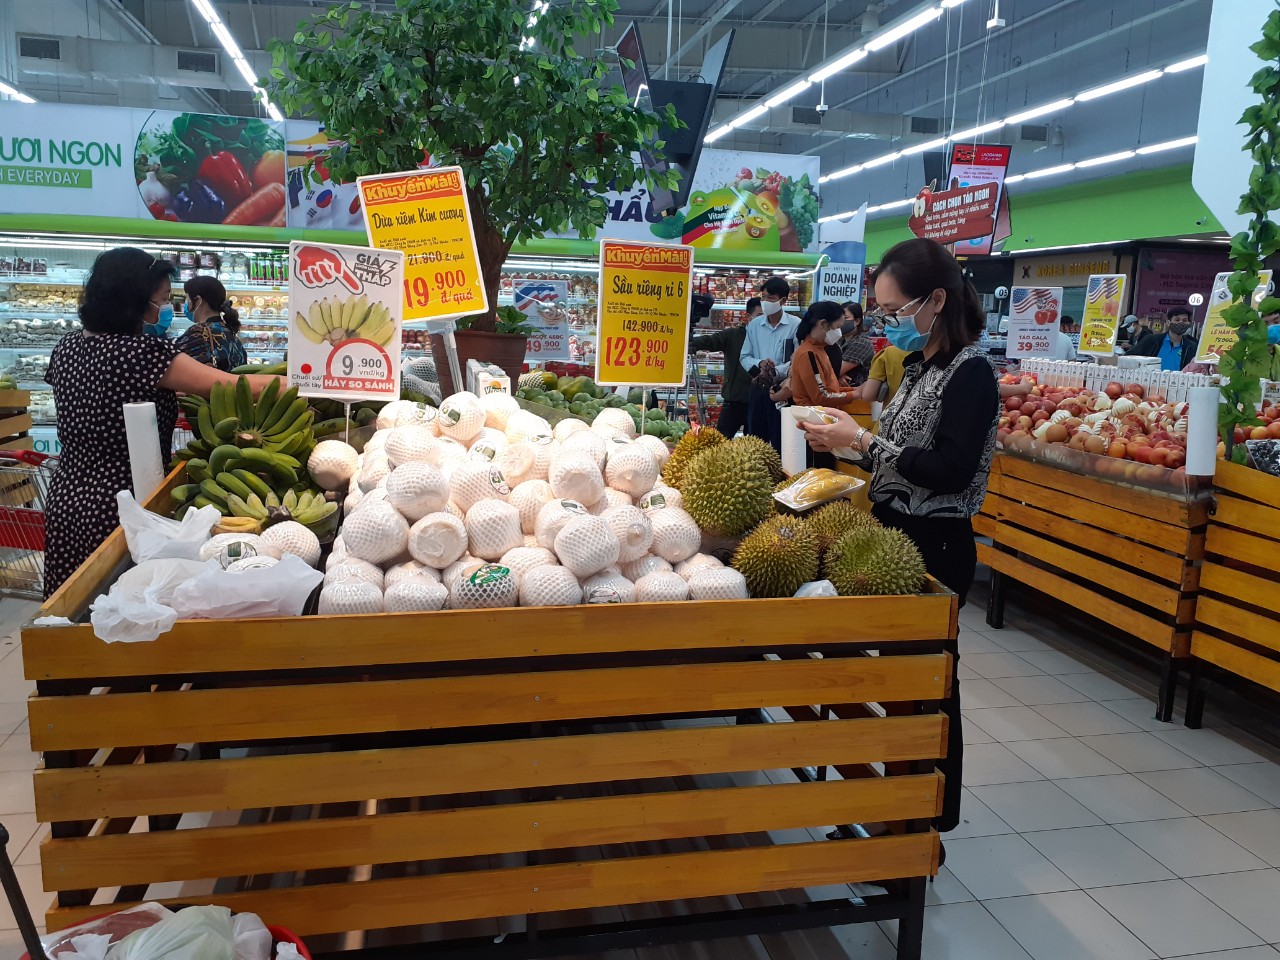  Quảng Ninh đã xây dựng phương án triển khai các điểm bán hàng nhu yếu phẩm cho người dân trong 15 ngày cách ly toàn xã hội.